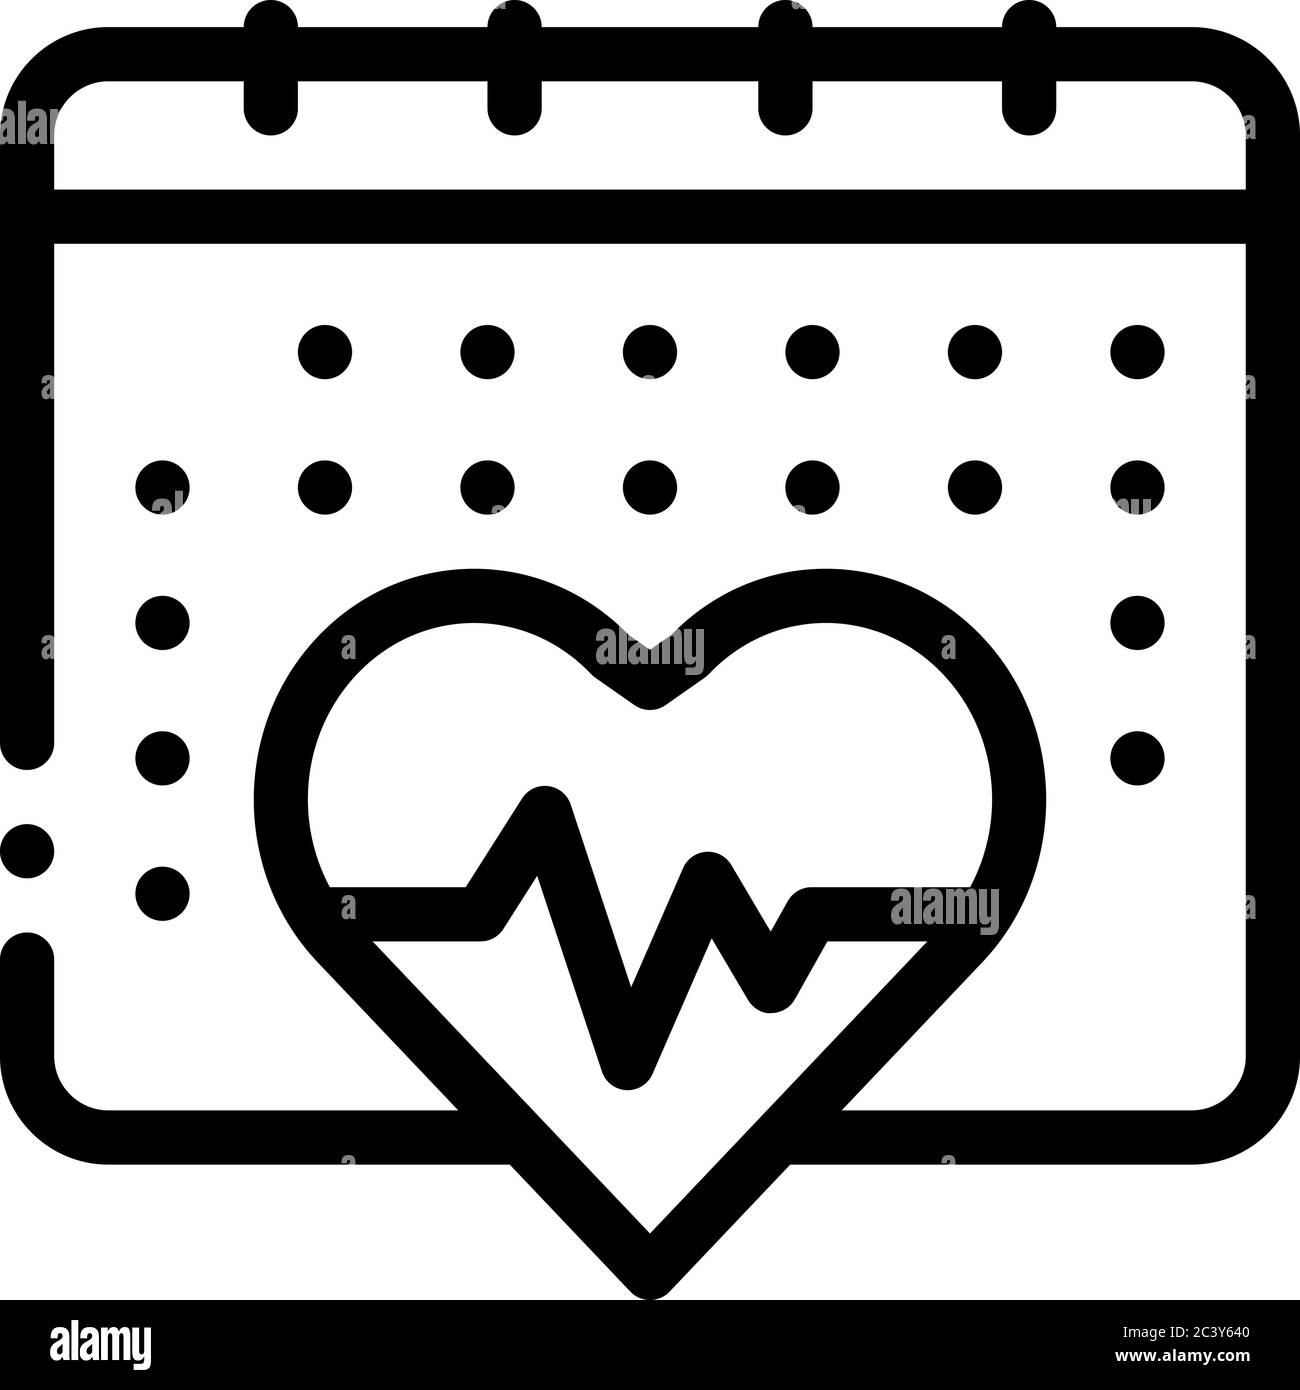 Heart Calendar Dot 